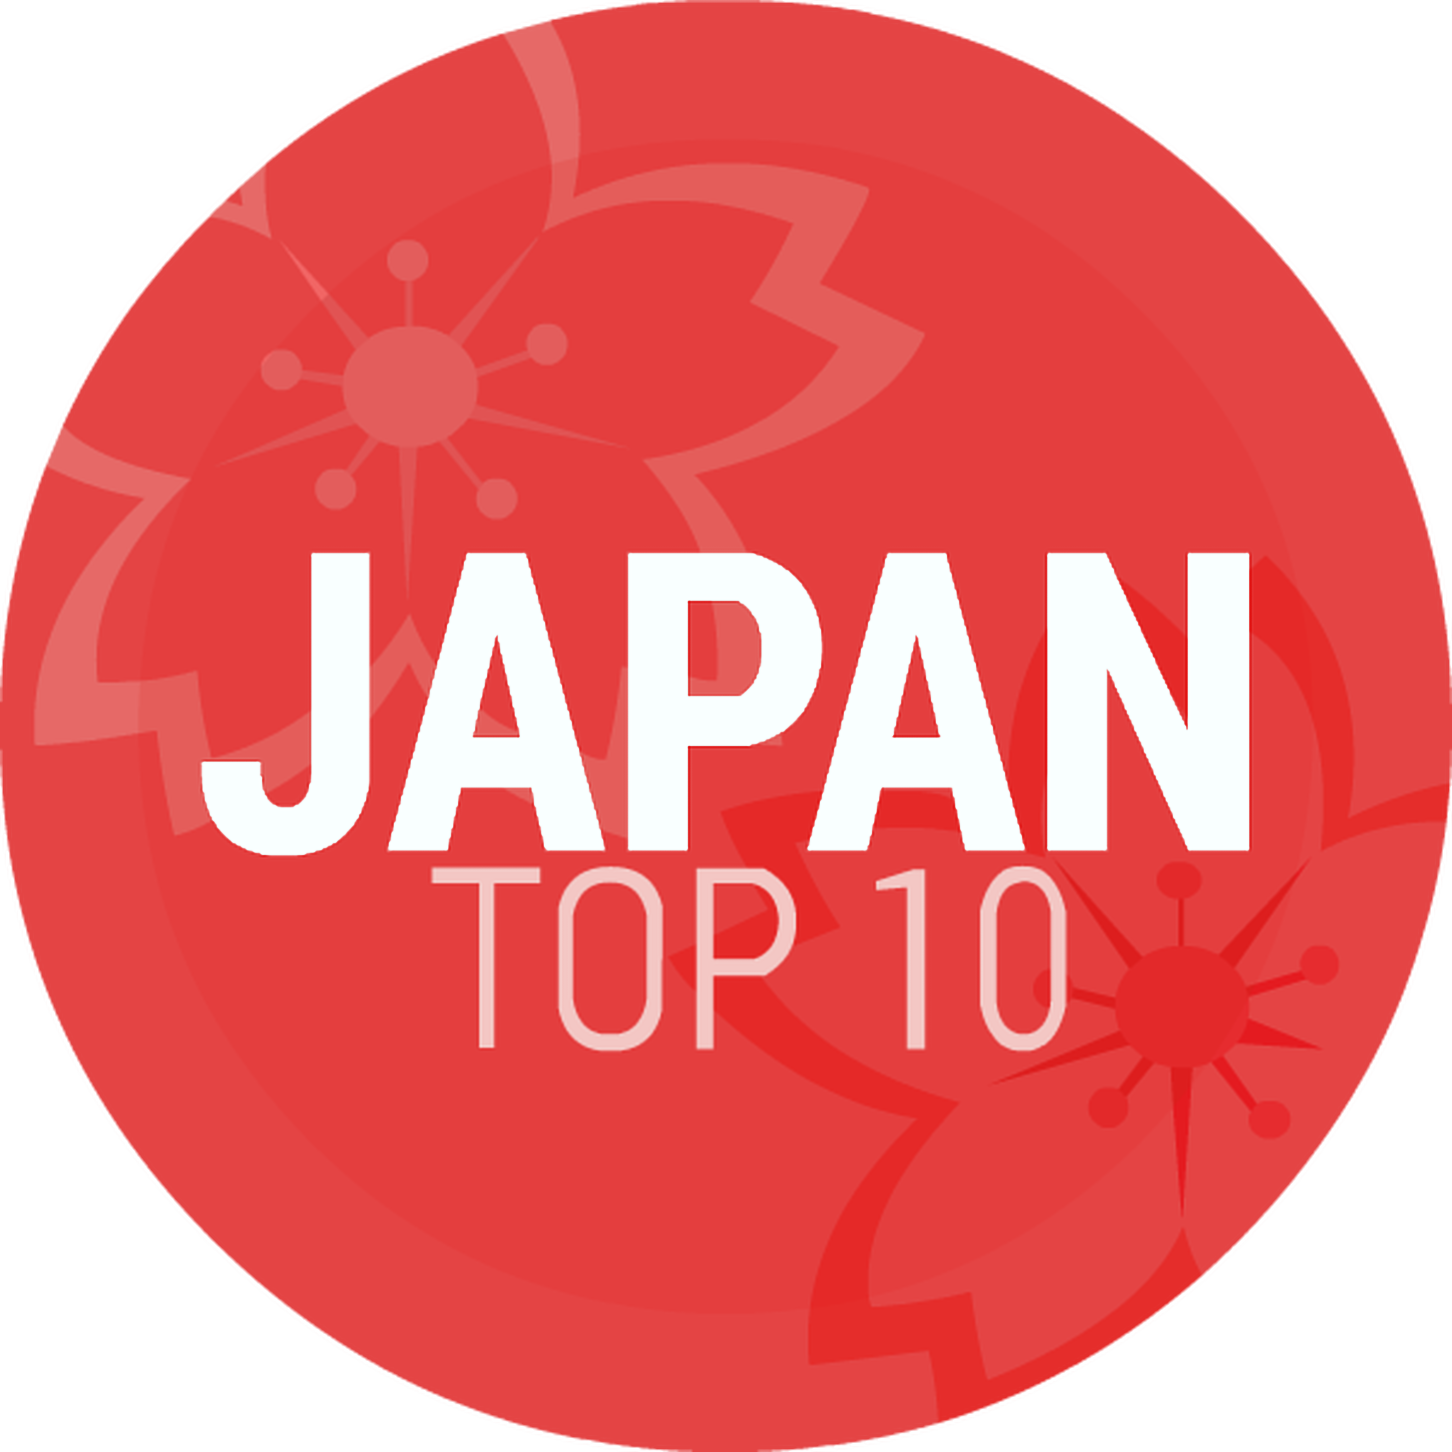 Episode 156: Japan Top 10 November 2016 Artist Of The Month: UVERworld